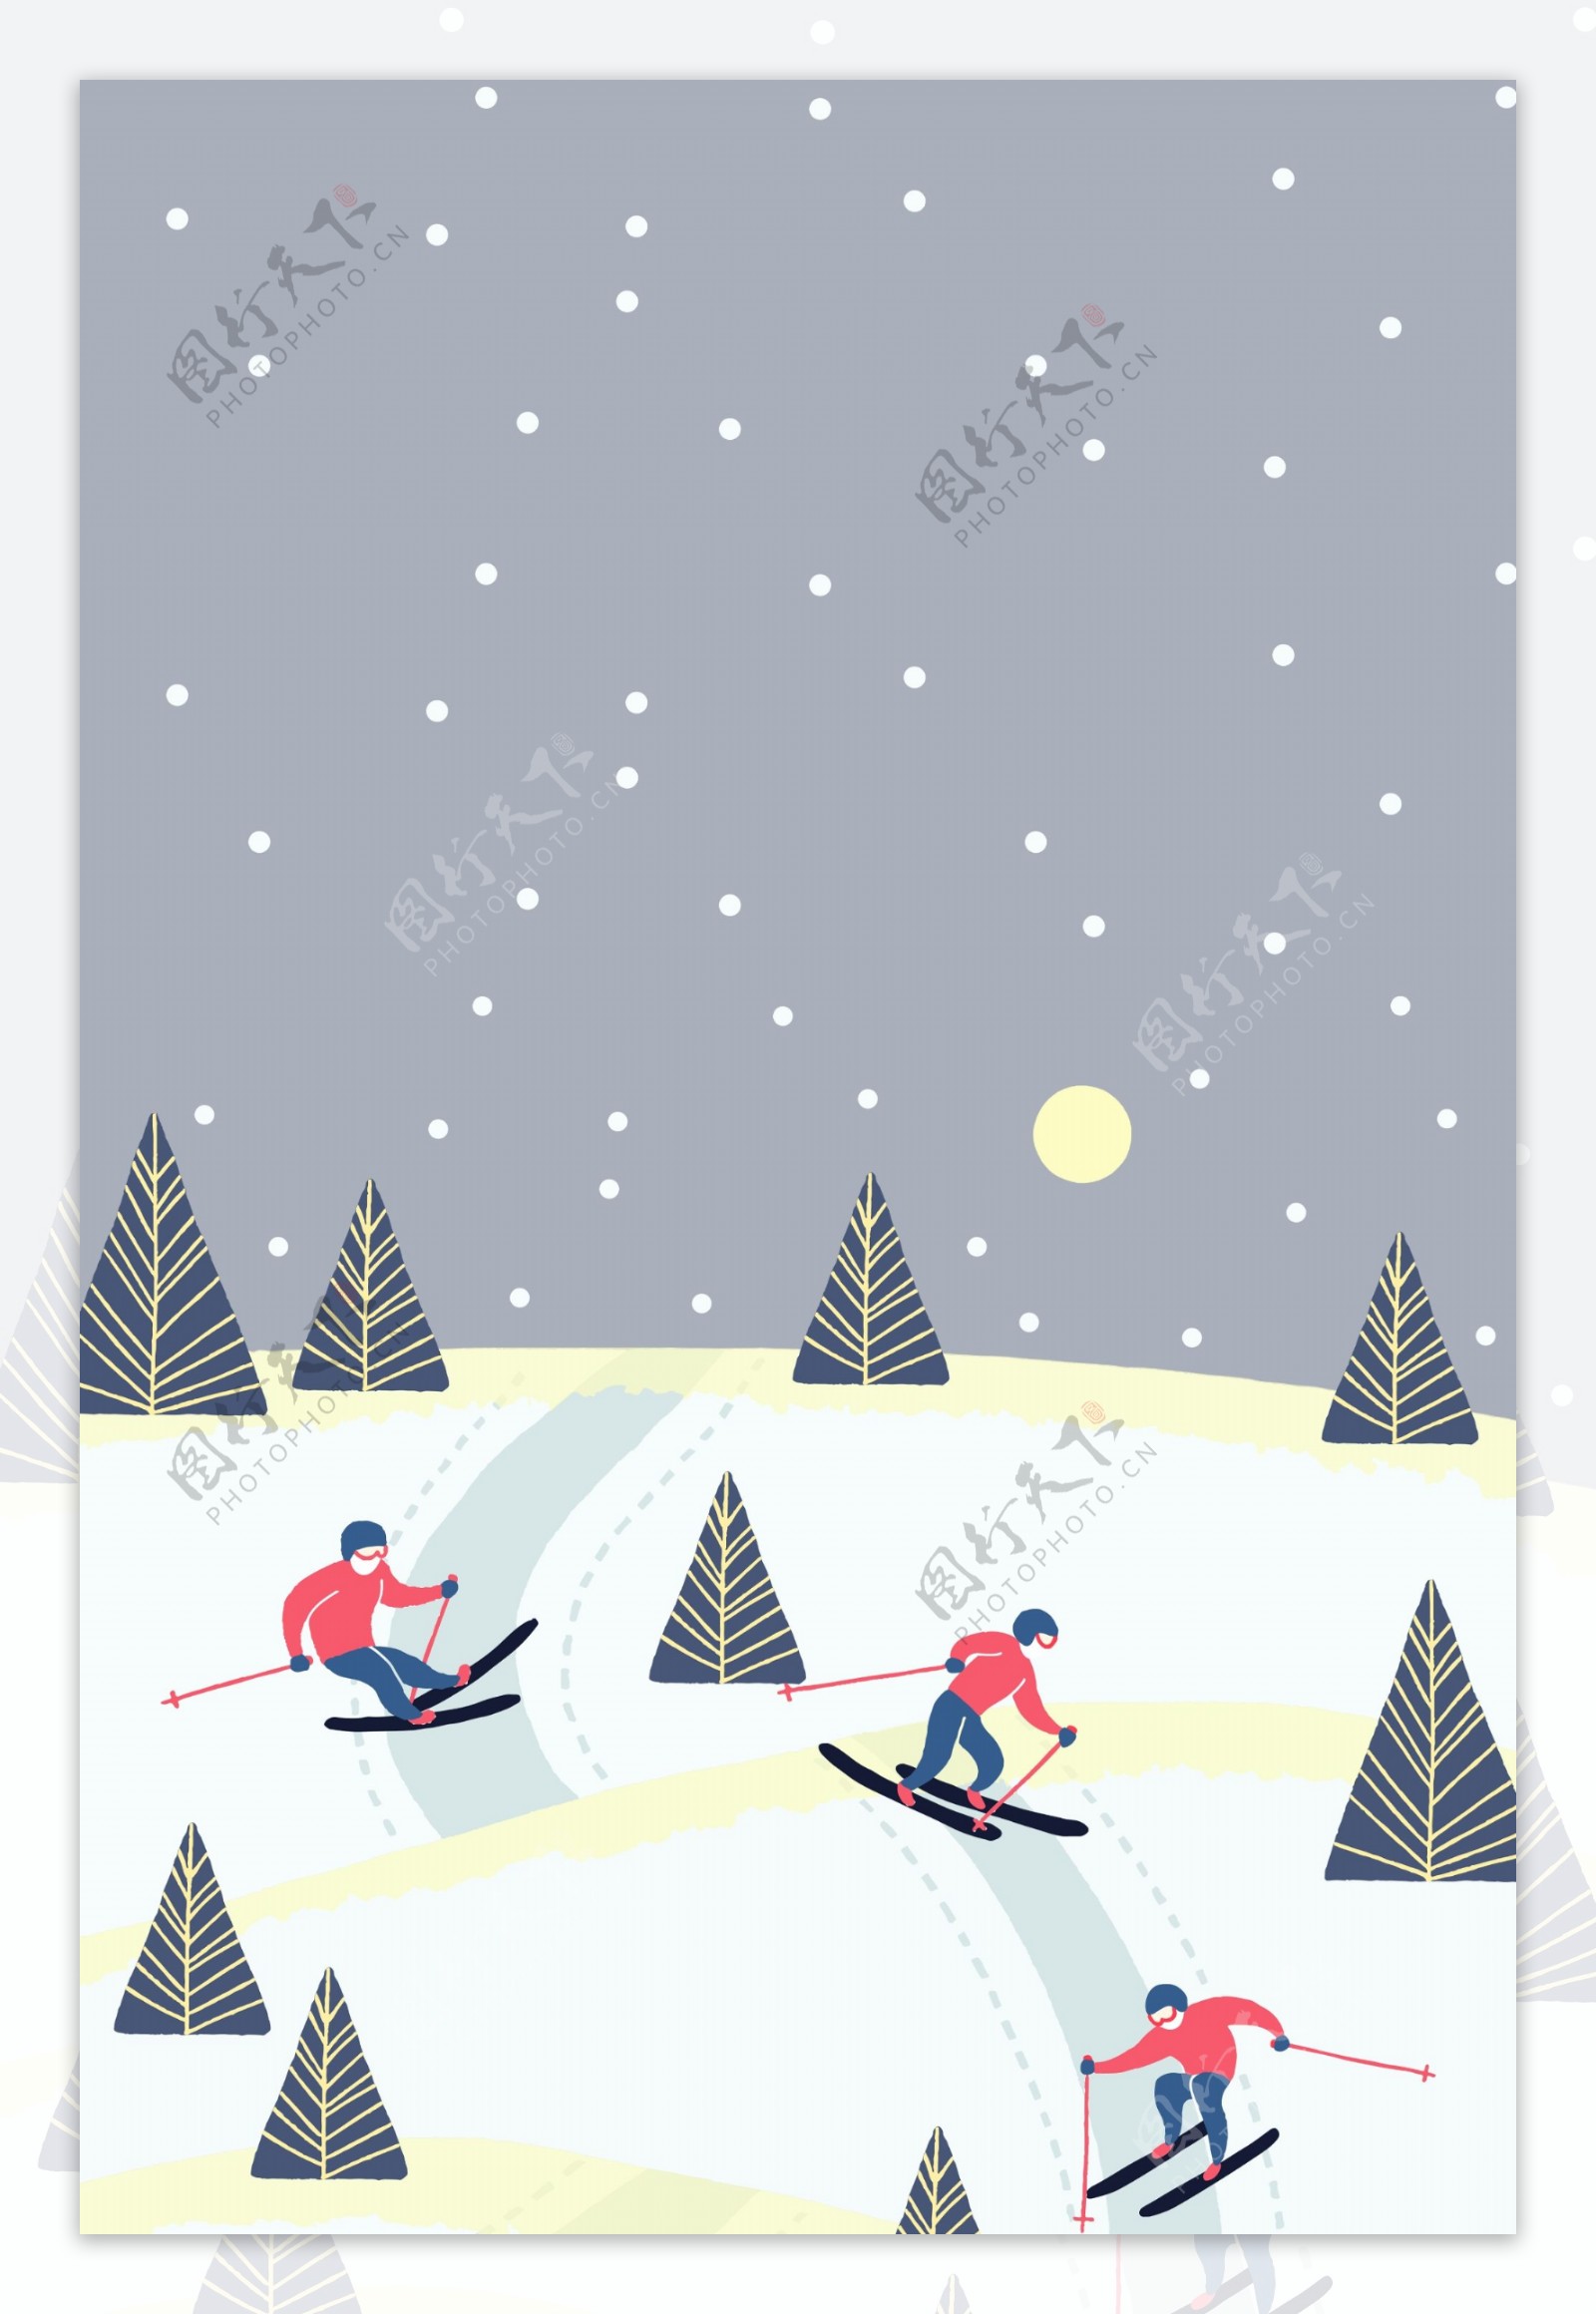 冬至节气雪山滑雪背景设计